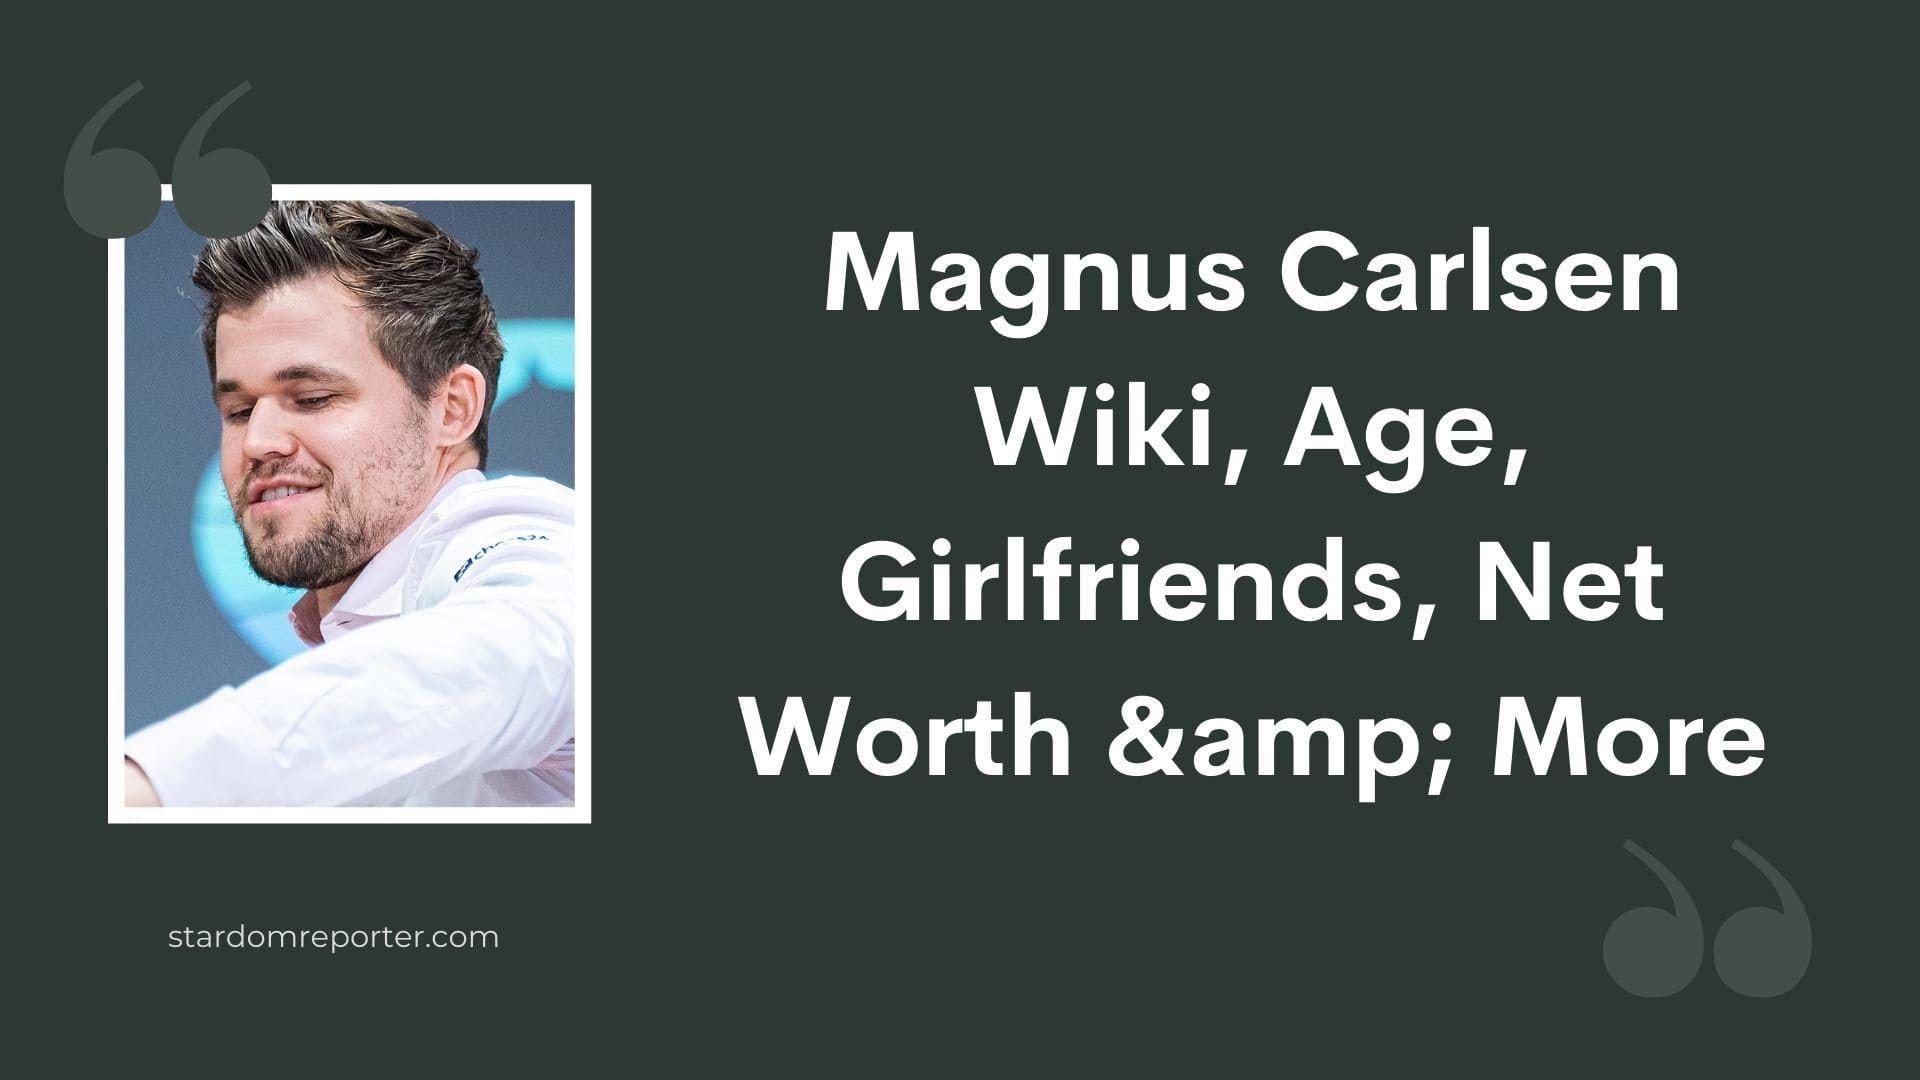 Magnus Carlsen Wiki, Age, Girlfriends, Net Worth & More - 11